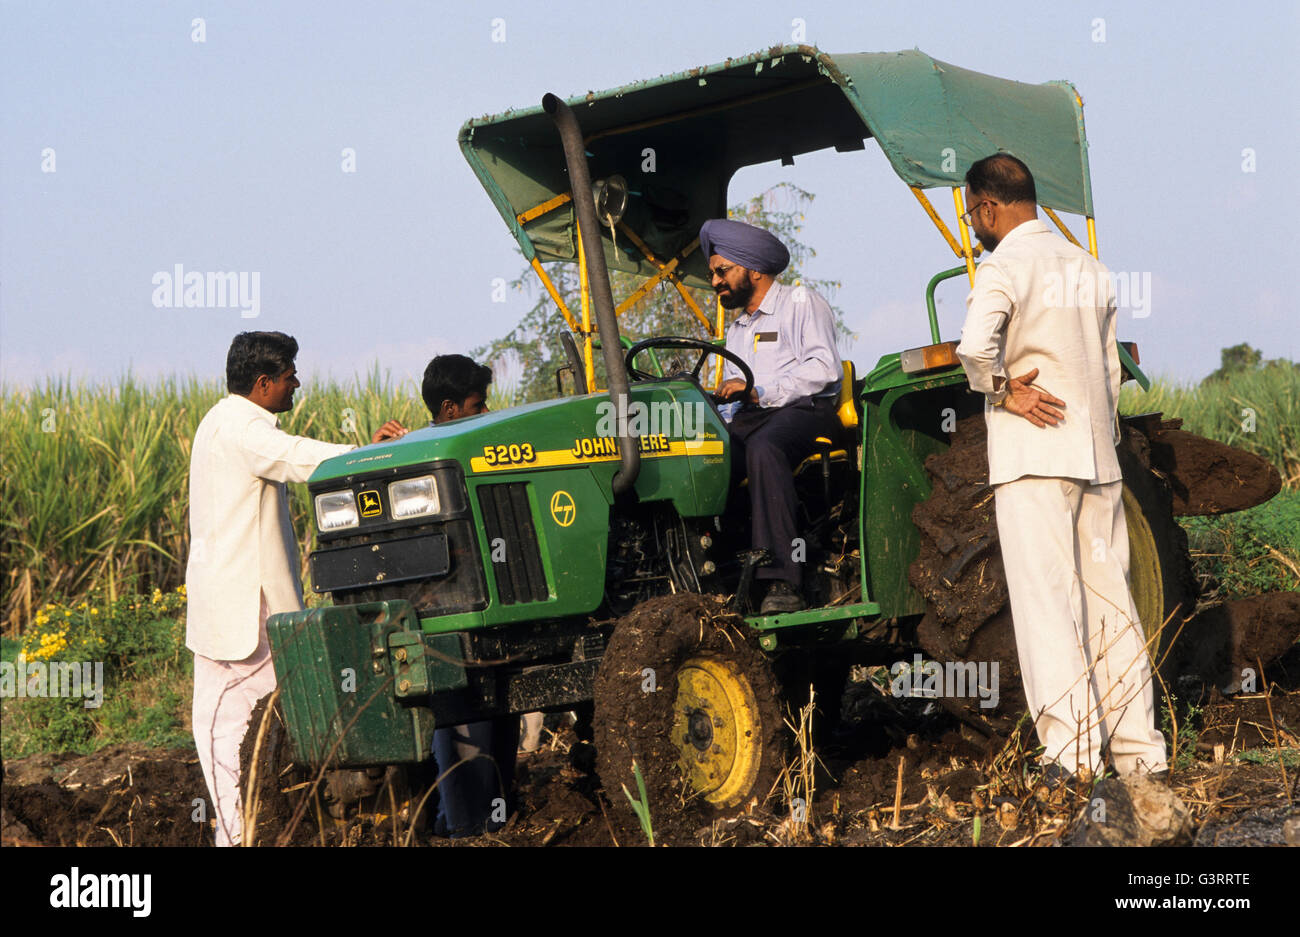 INDE, Pune, concessionnaire de tracteurs John Deere dans le village, tracteur John Deere 5203, formation et démonstration pour les agriculteurs Banque D'Images